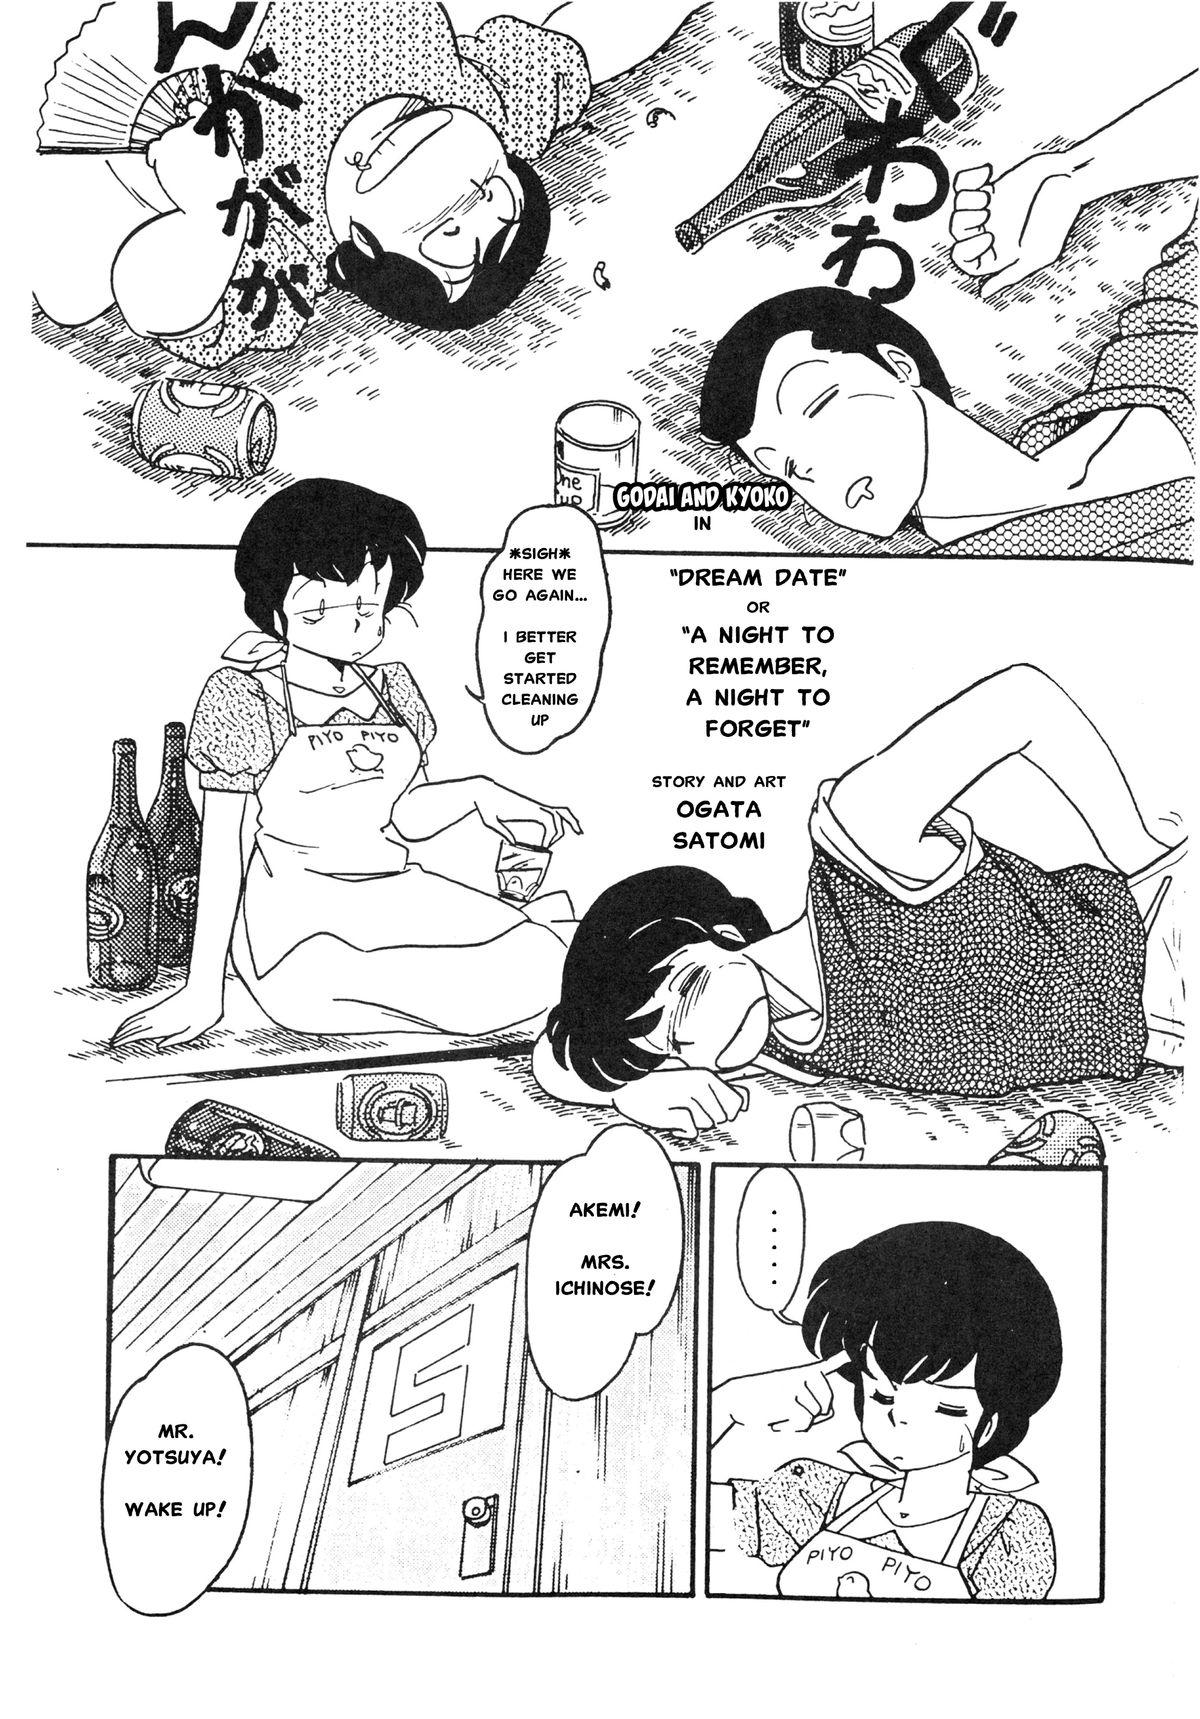 Vagina Yume ka utsutsu ka | Dream Date - Maison ikkoku Gozando - Page 1